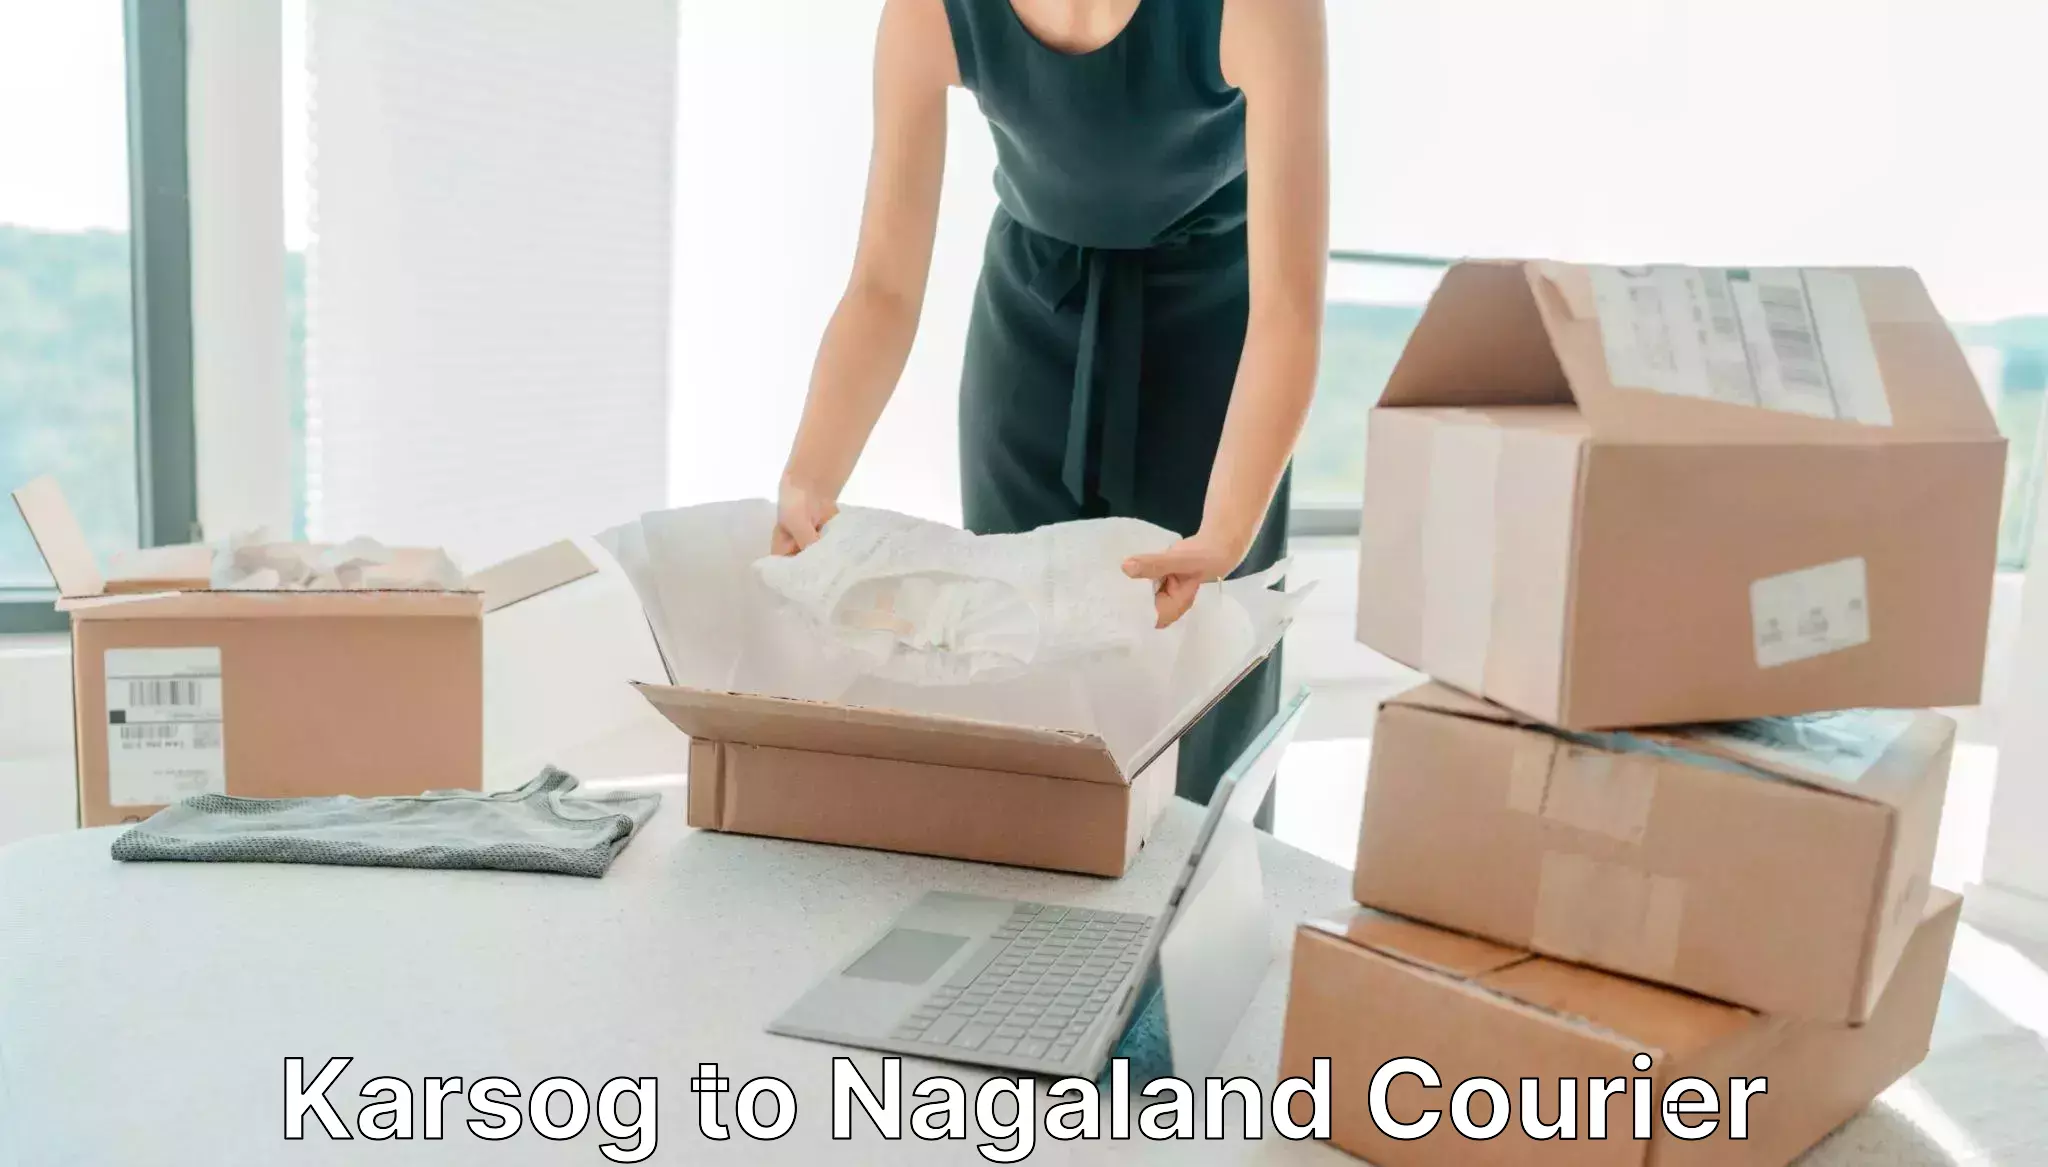 Next day courier Karsog to Nagaland